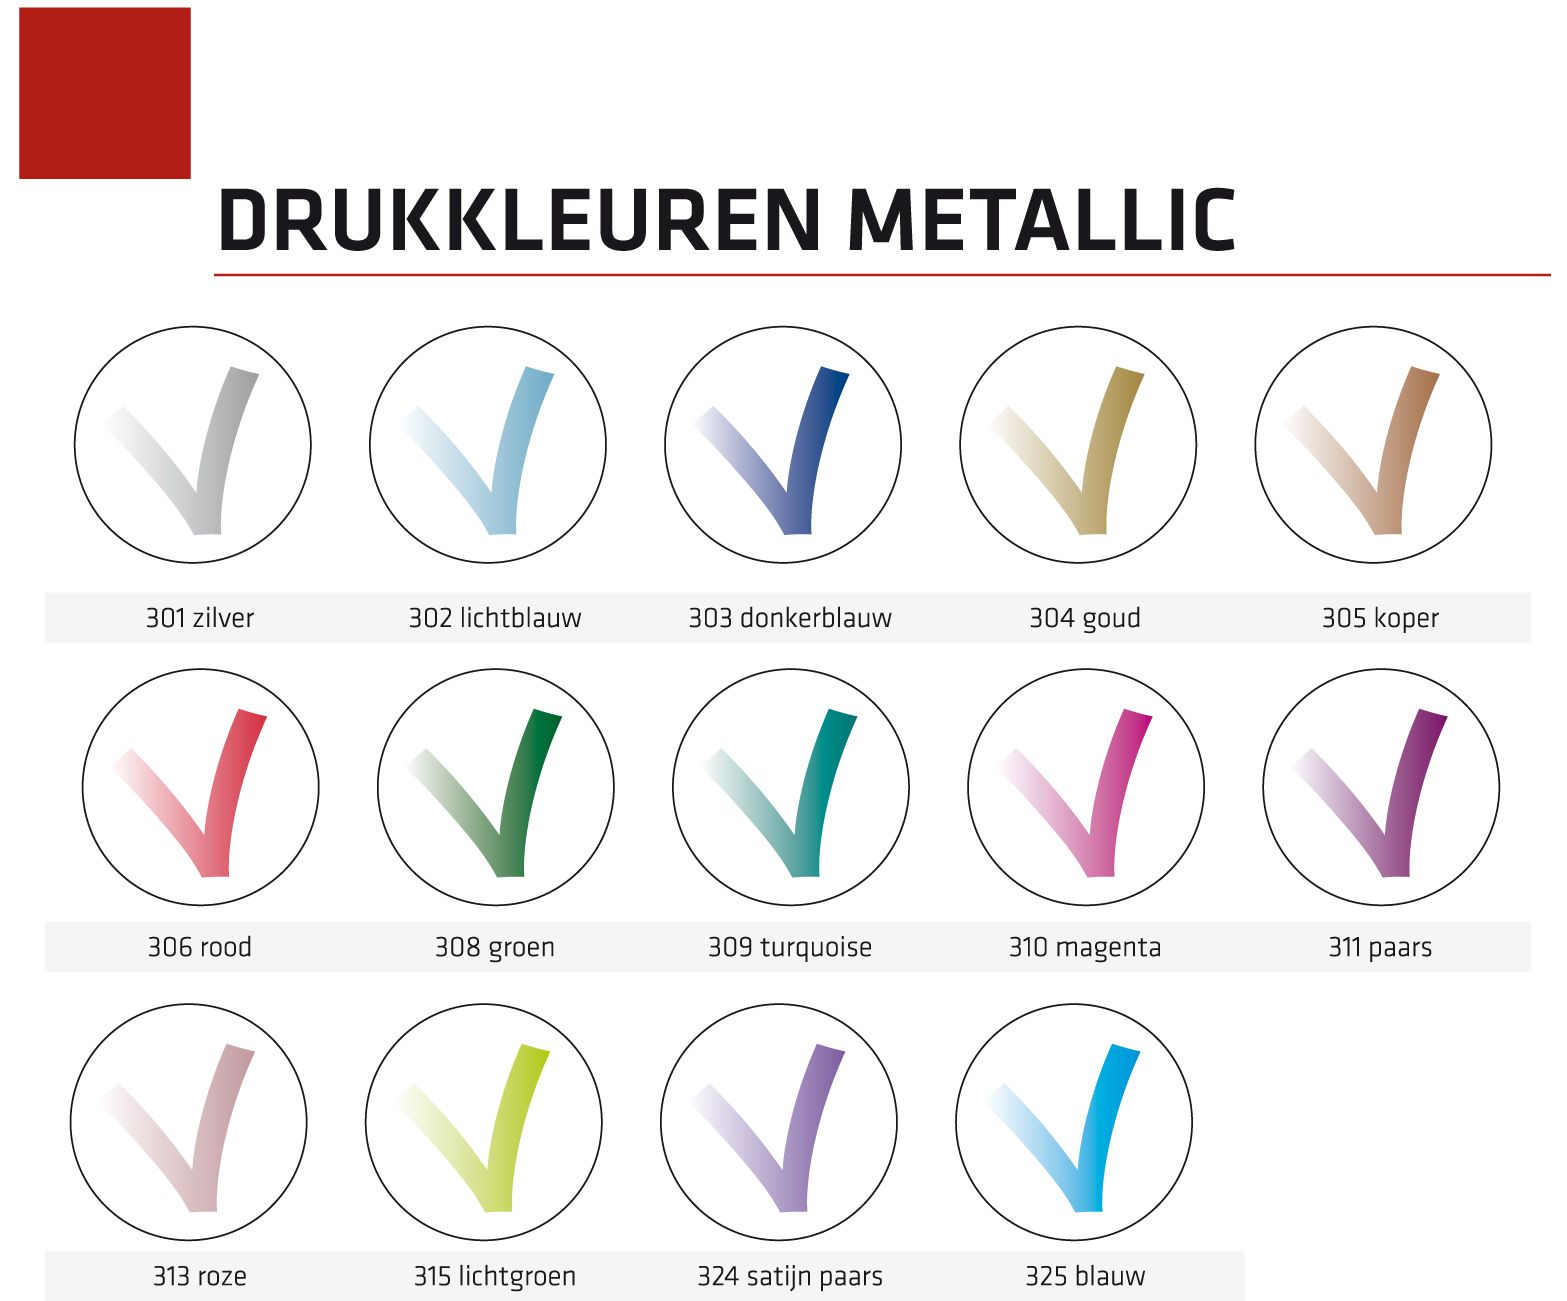 Drukkleuren-metallic-etiketten-bedrukken.jpg